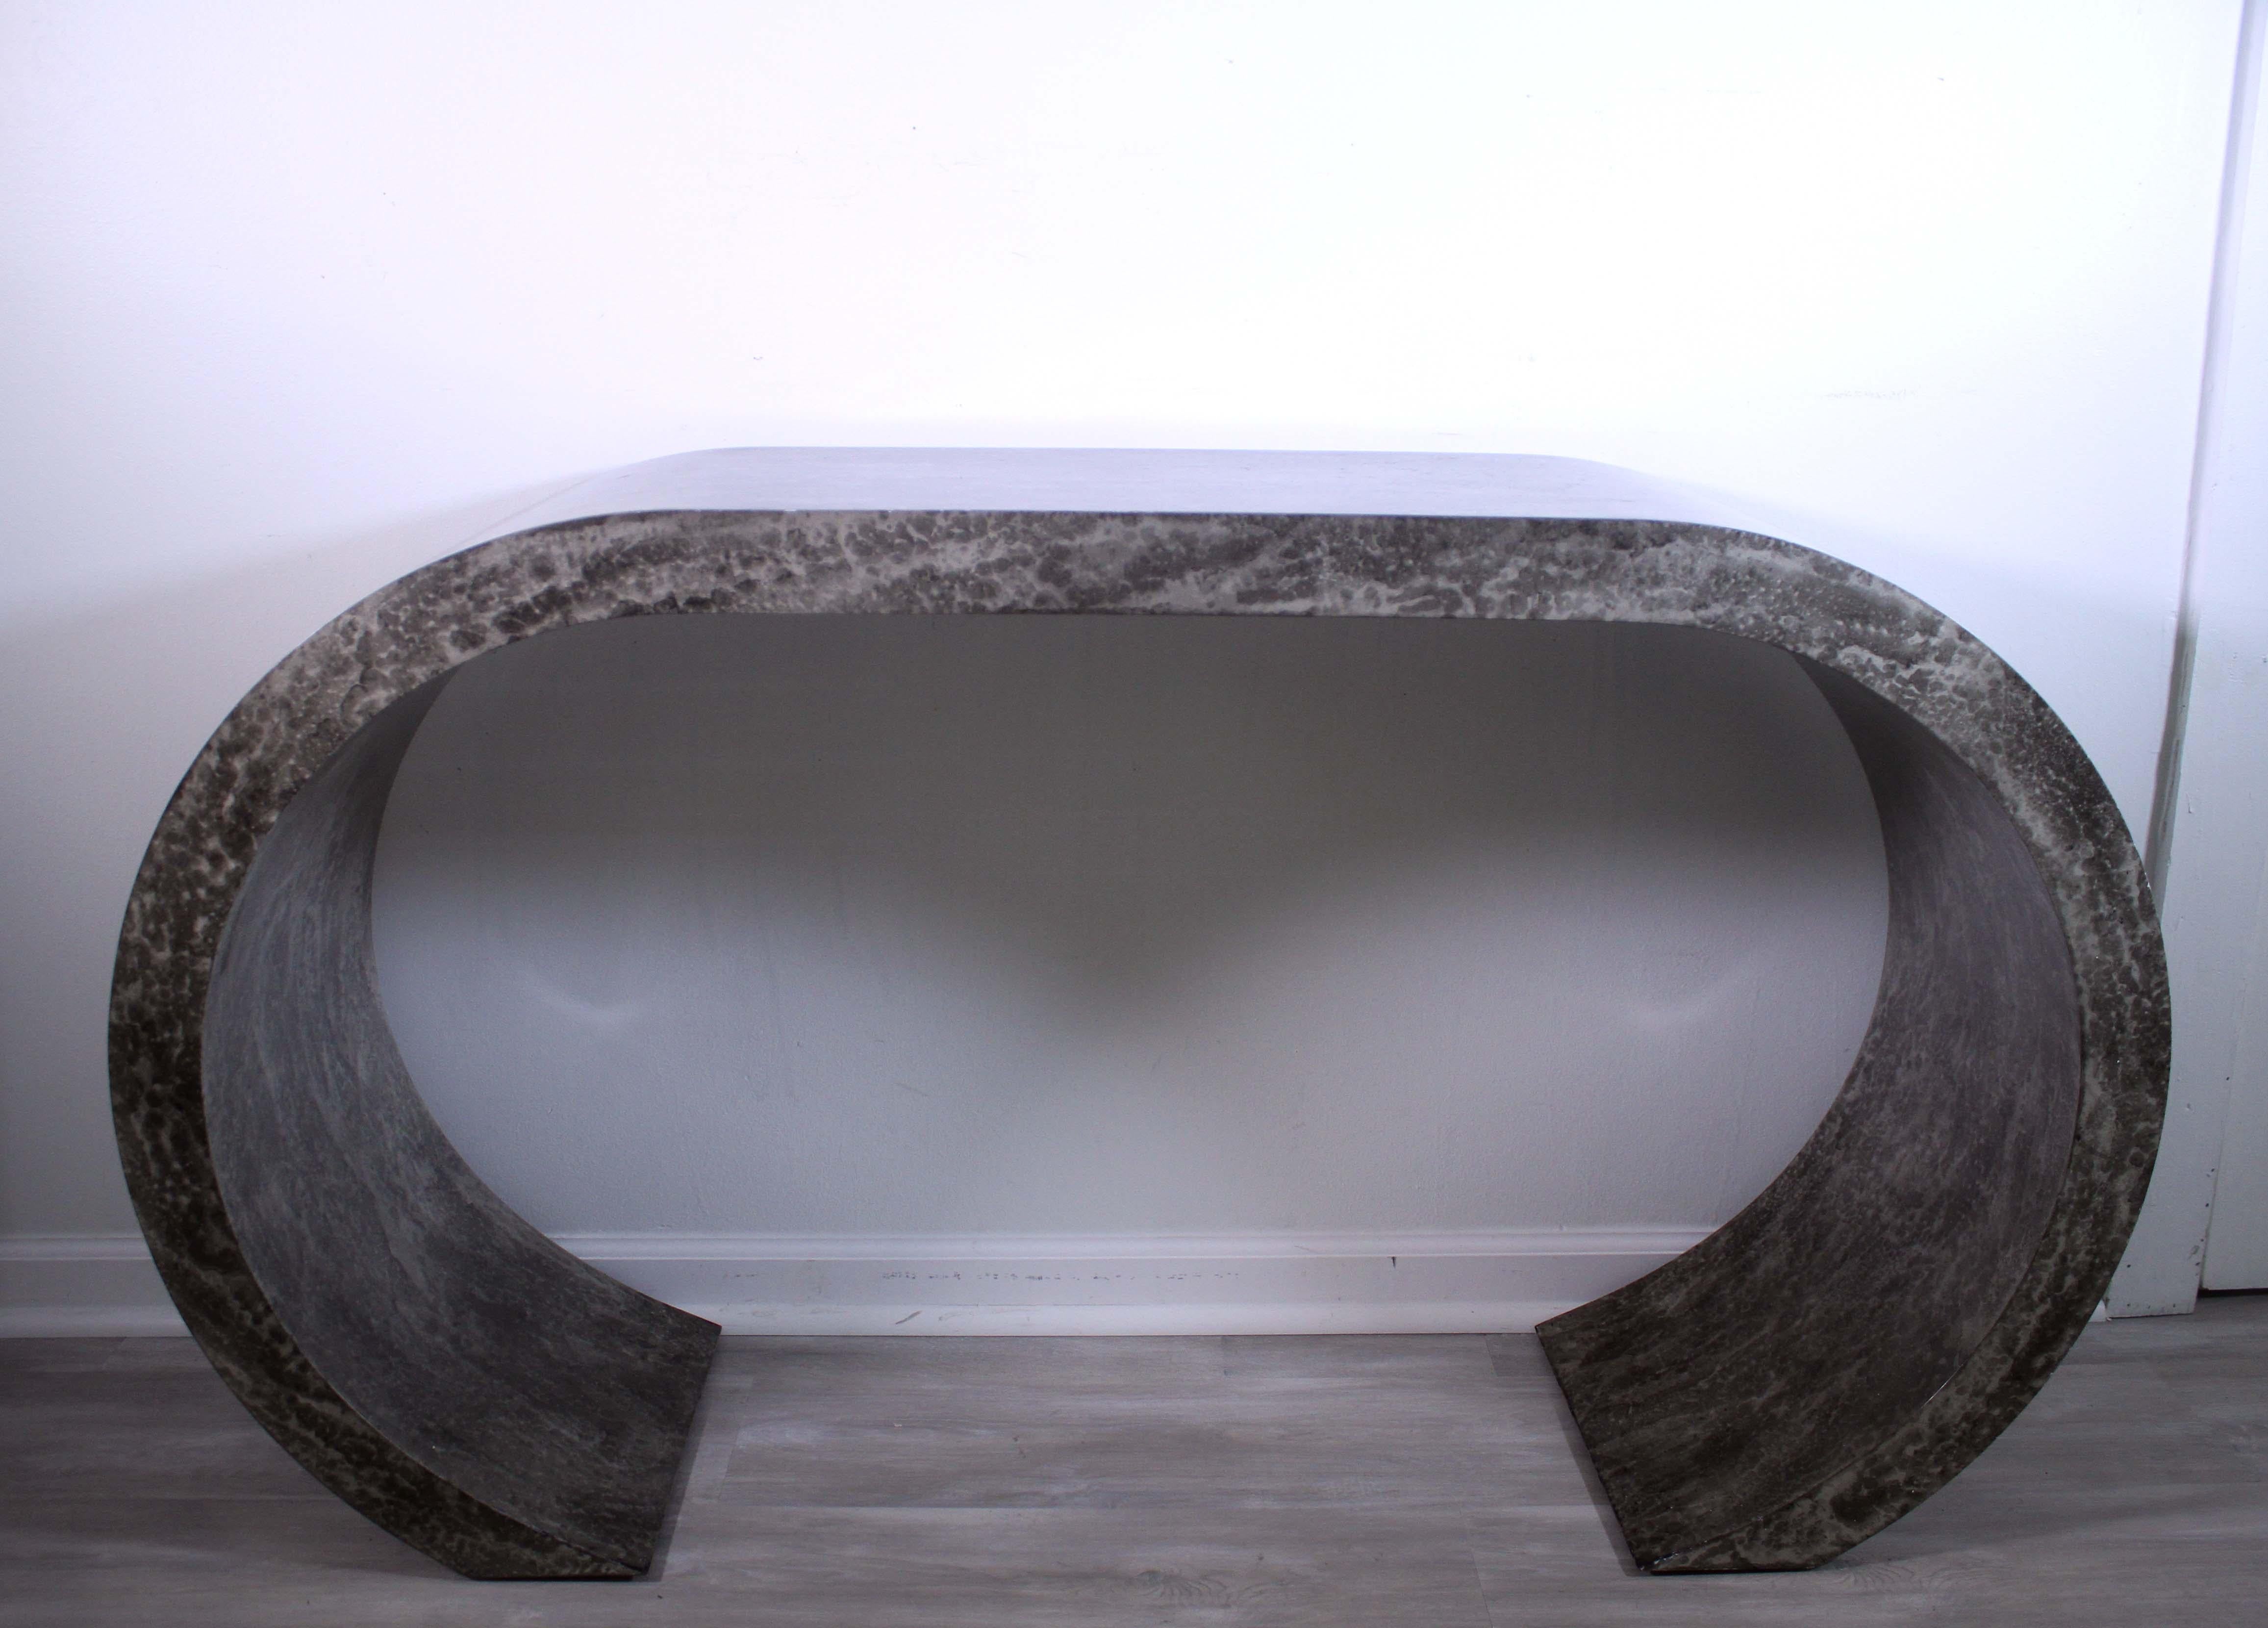 Dieser postmoderne, geschwungene Konsolentisch aus Kunststein ist ein zeitgenössisches und einzigartiges Möbelstück, das jedem Raum einen modernen Touch verleiht. Das schlanke Design zeichnet sich durch ein geschwungenes Profil und eine auffällige